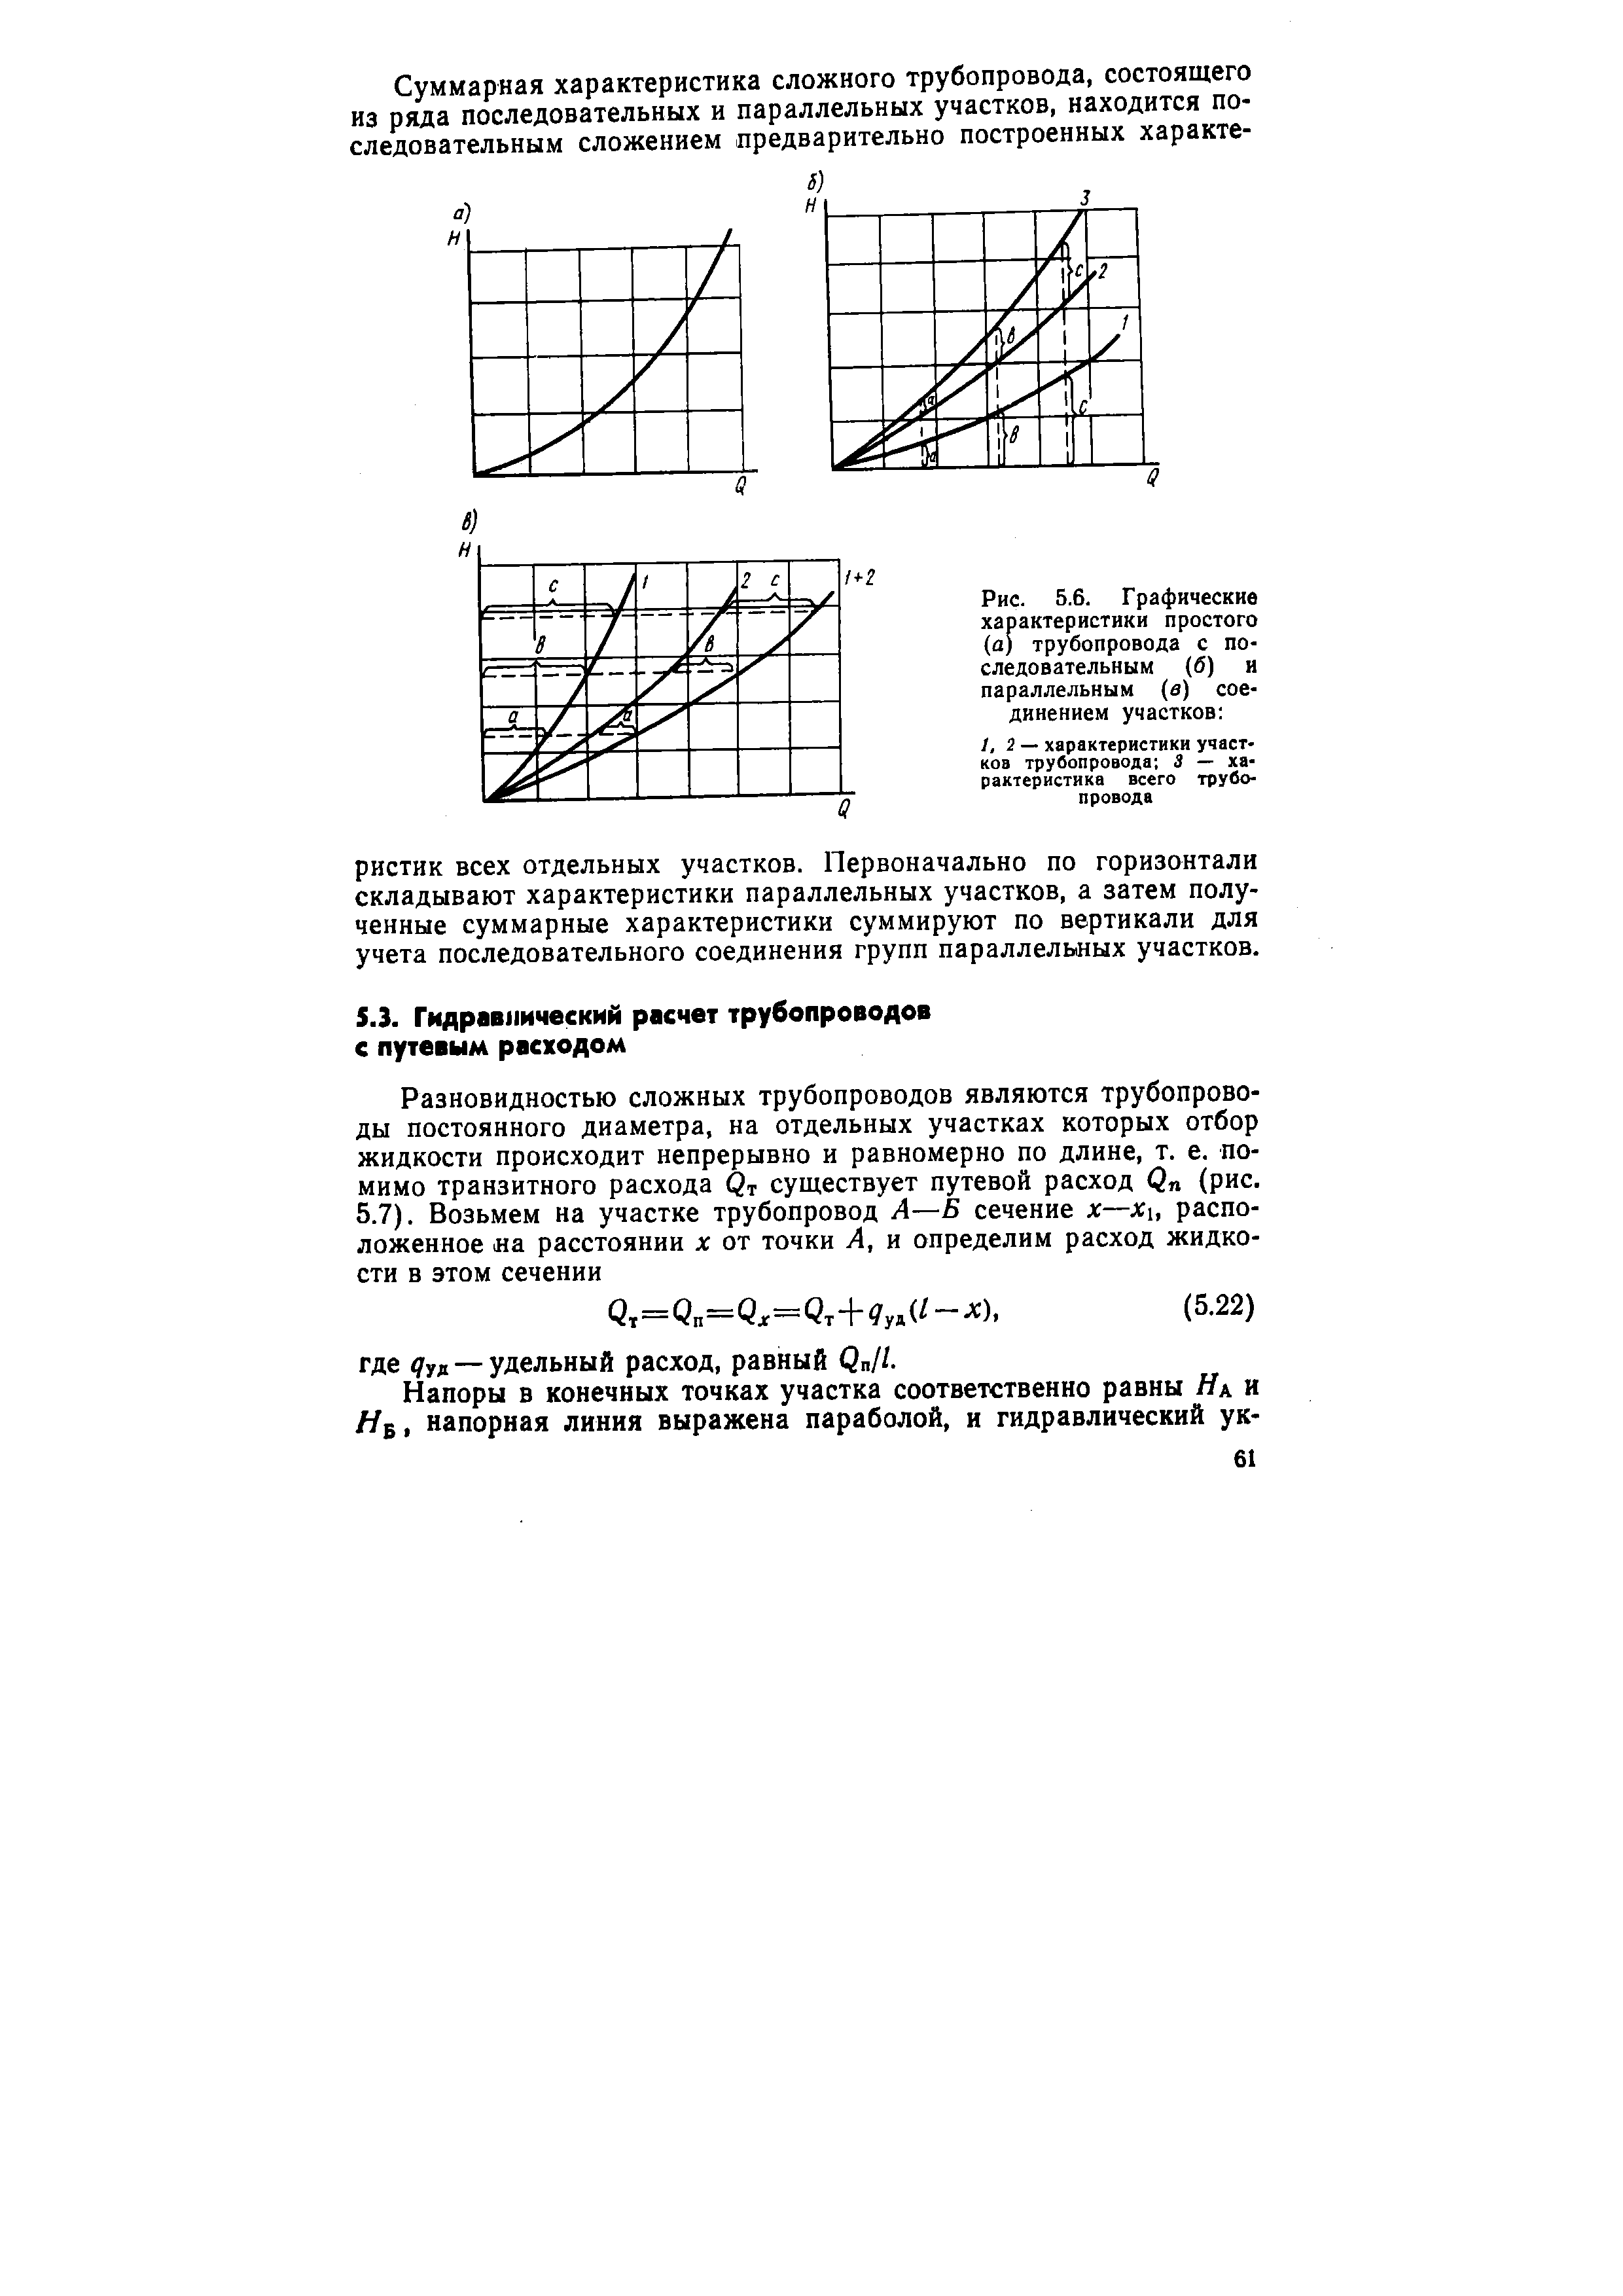 Рис. 5.6. Графические характеристики простого (а) трубопровода с последовательным (б) и параллельным (в) соединением участков 
